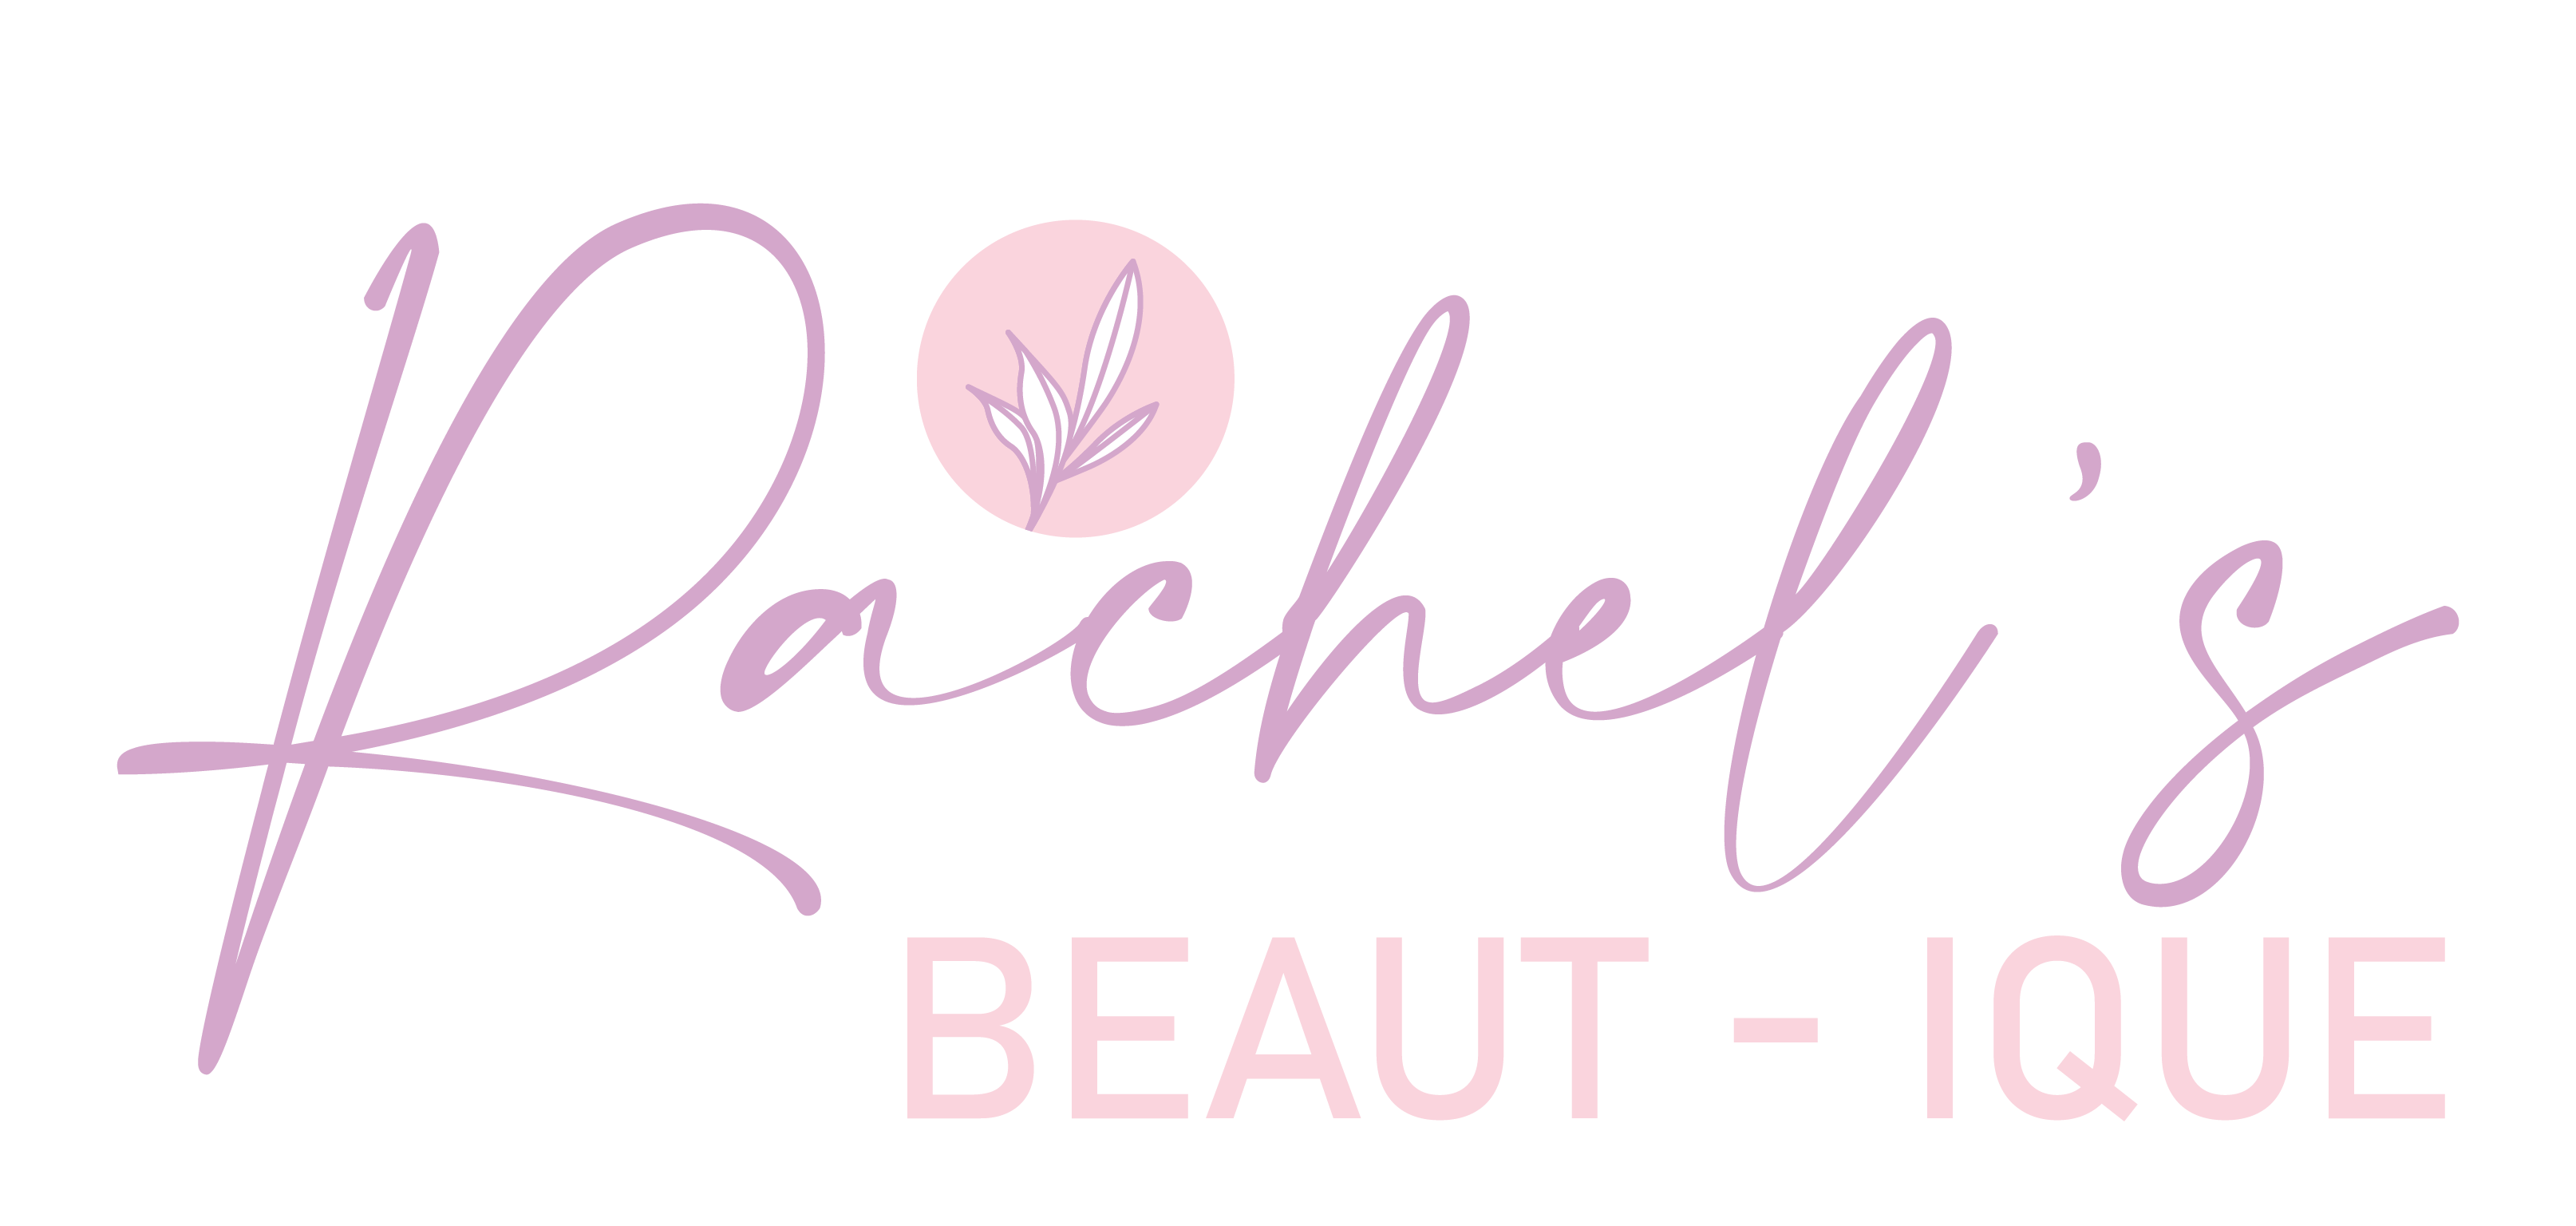 Rachel’s Beaut-ique